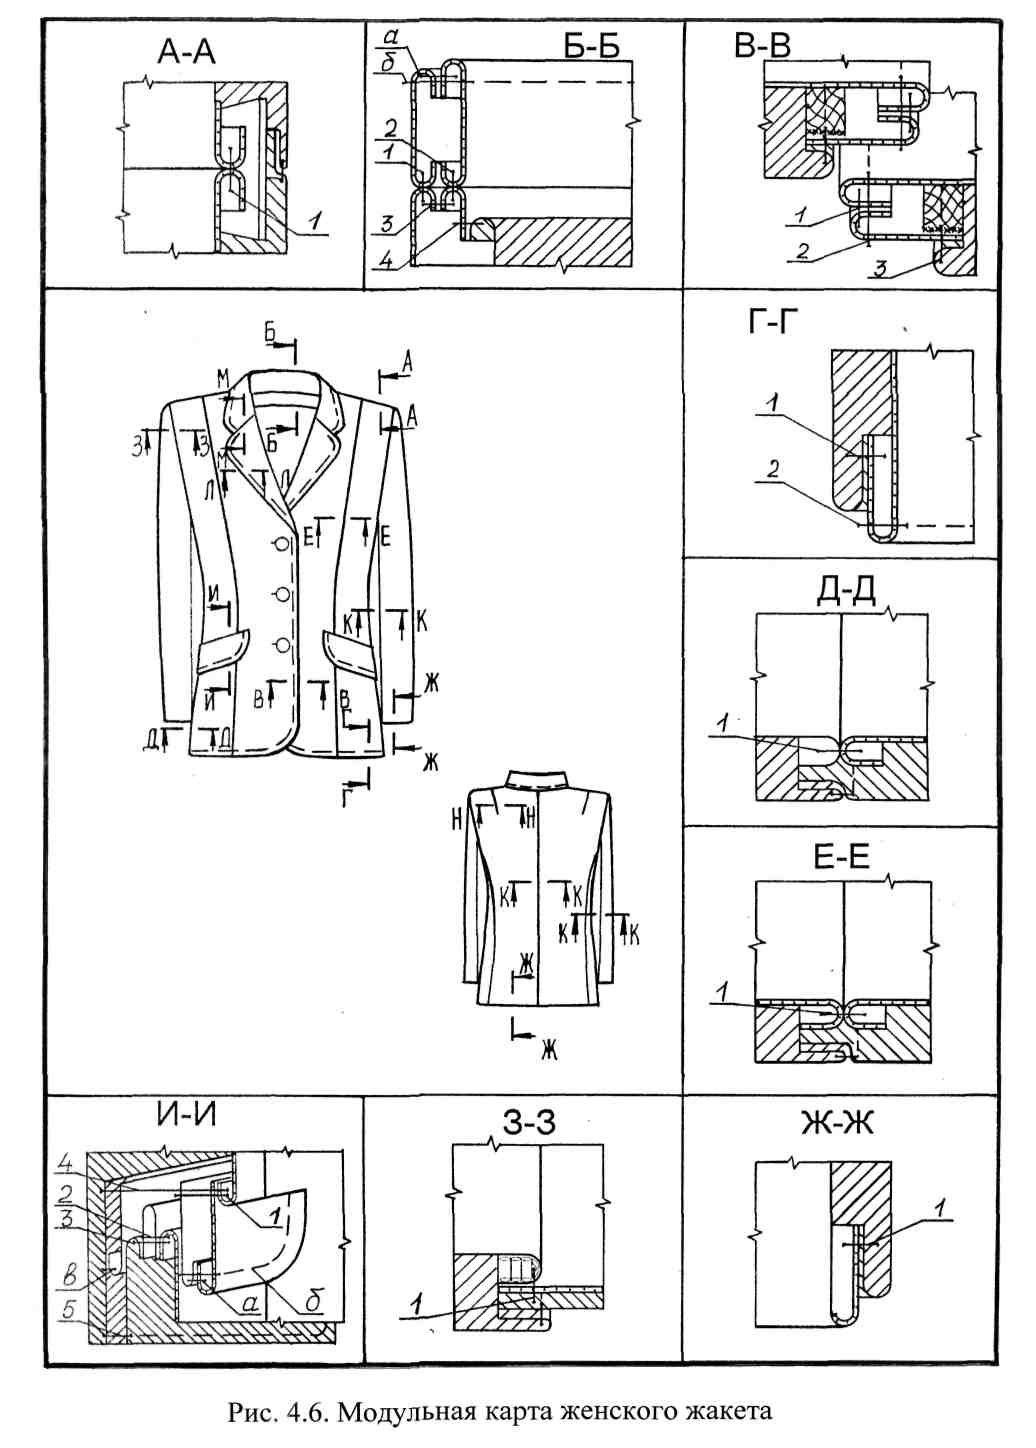 Схема технологической обработки жакета на подкладке